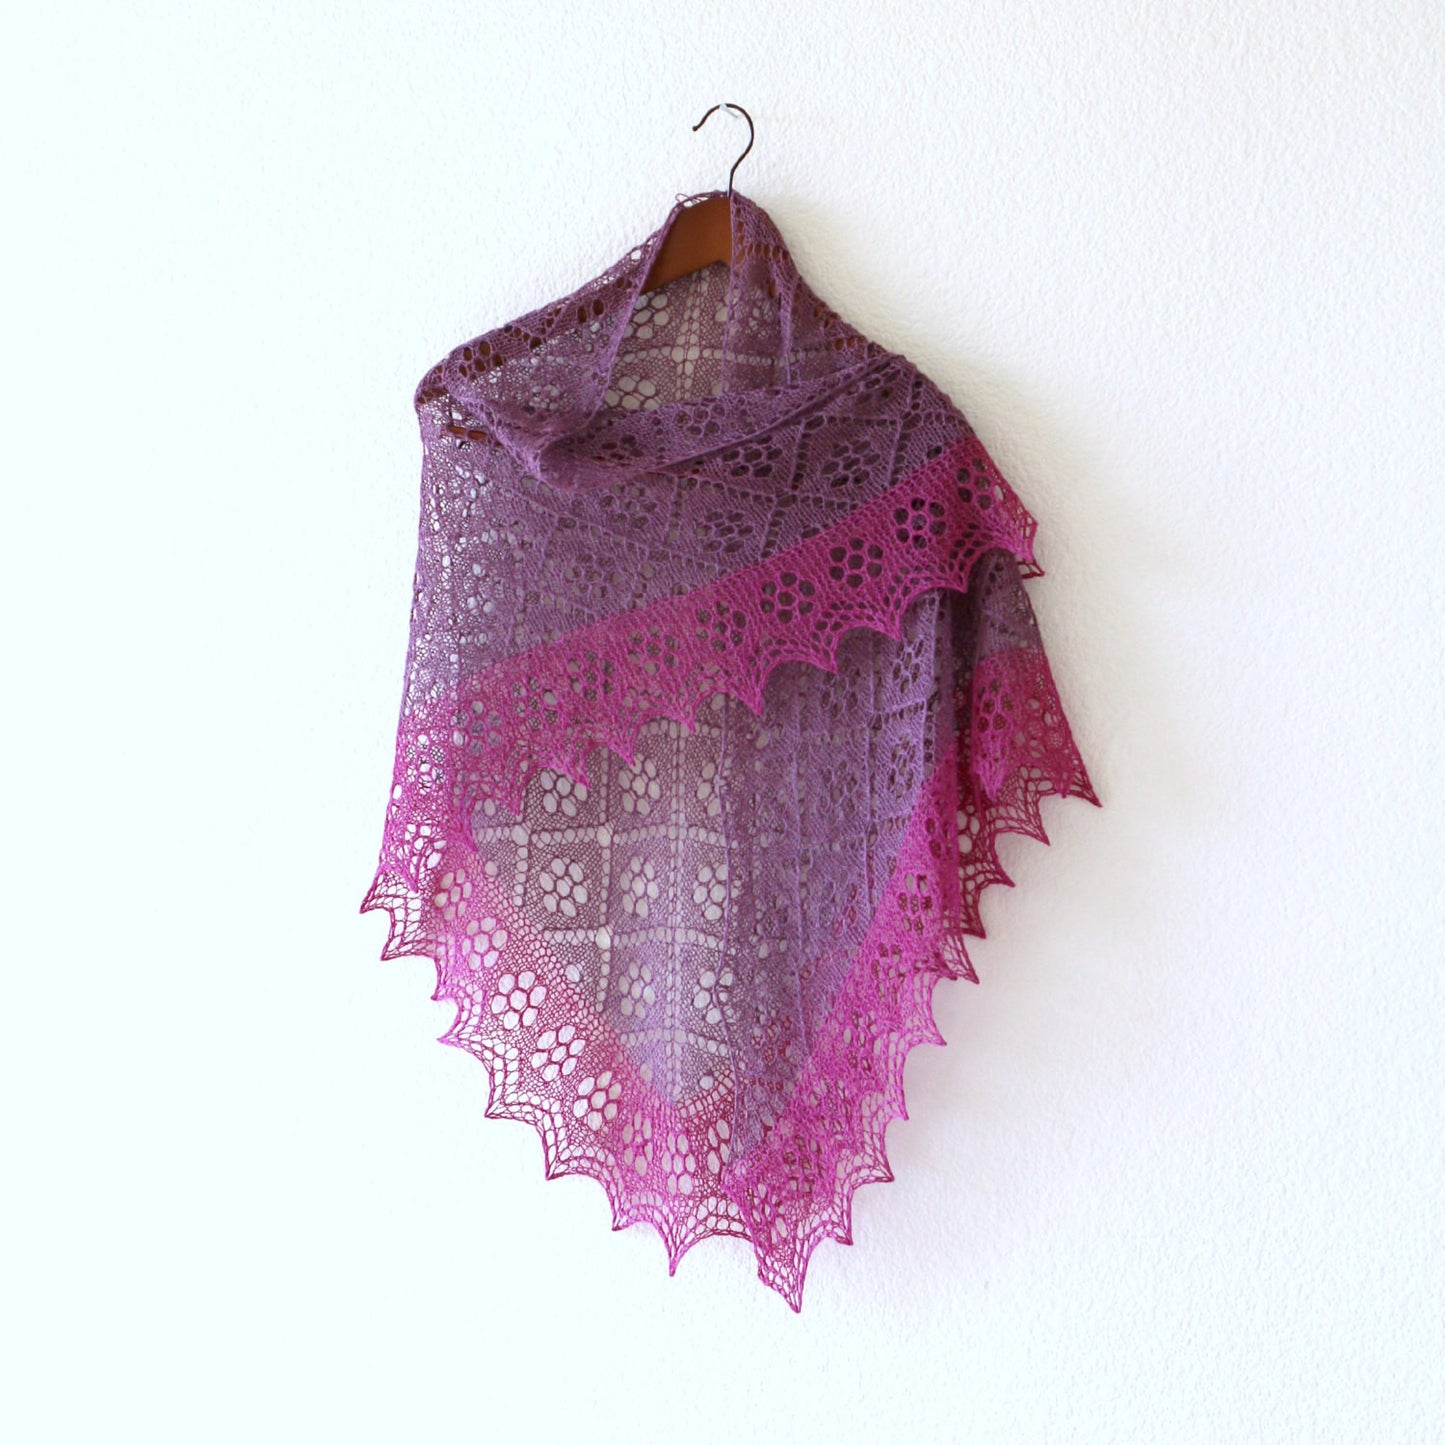 Knitted purple shawl